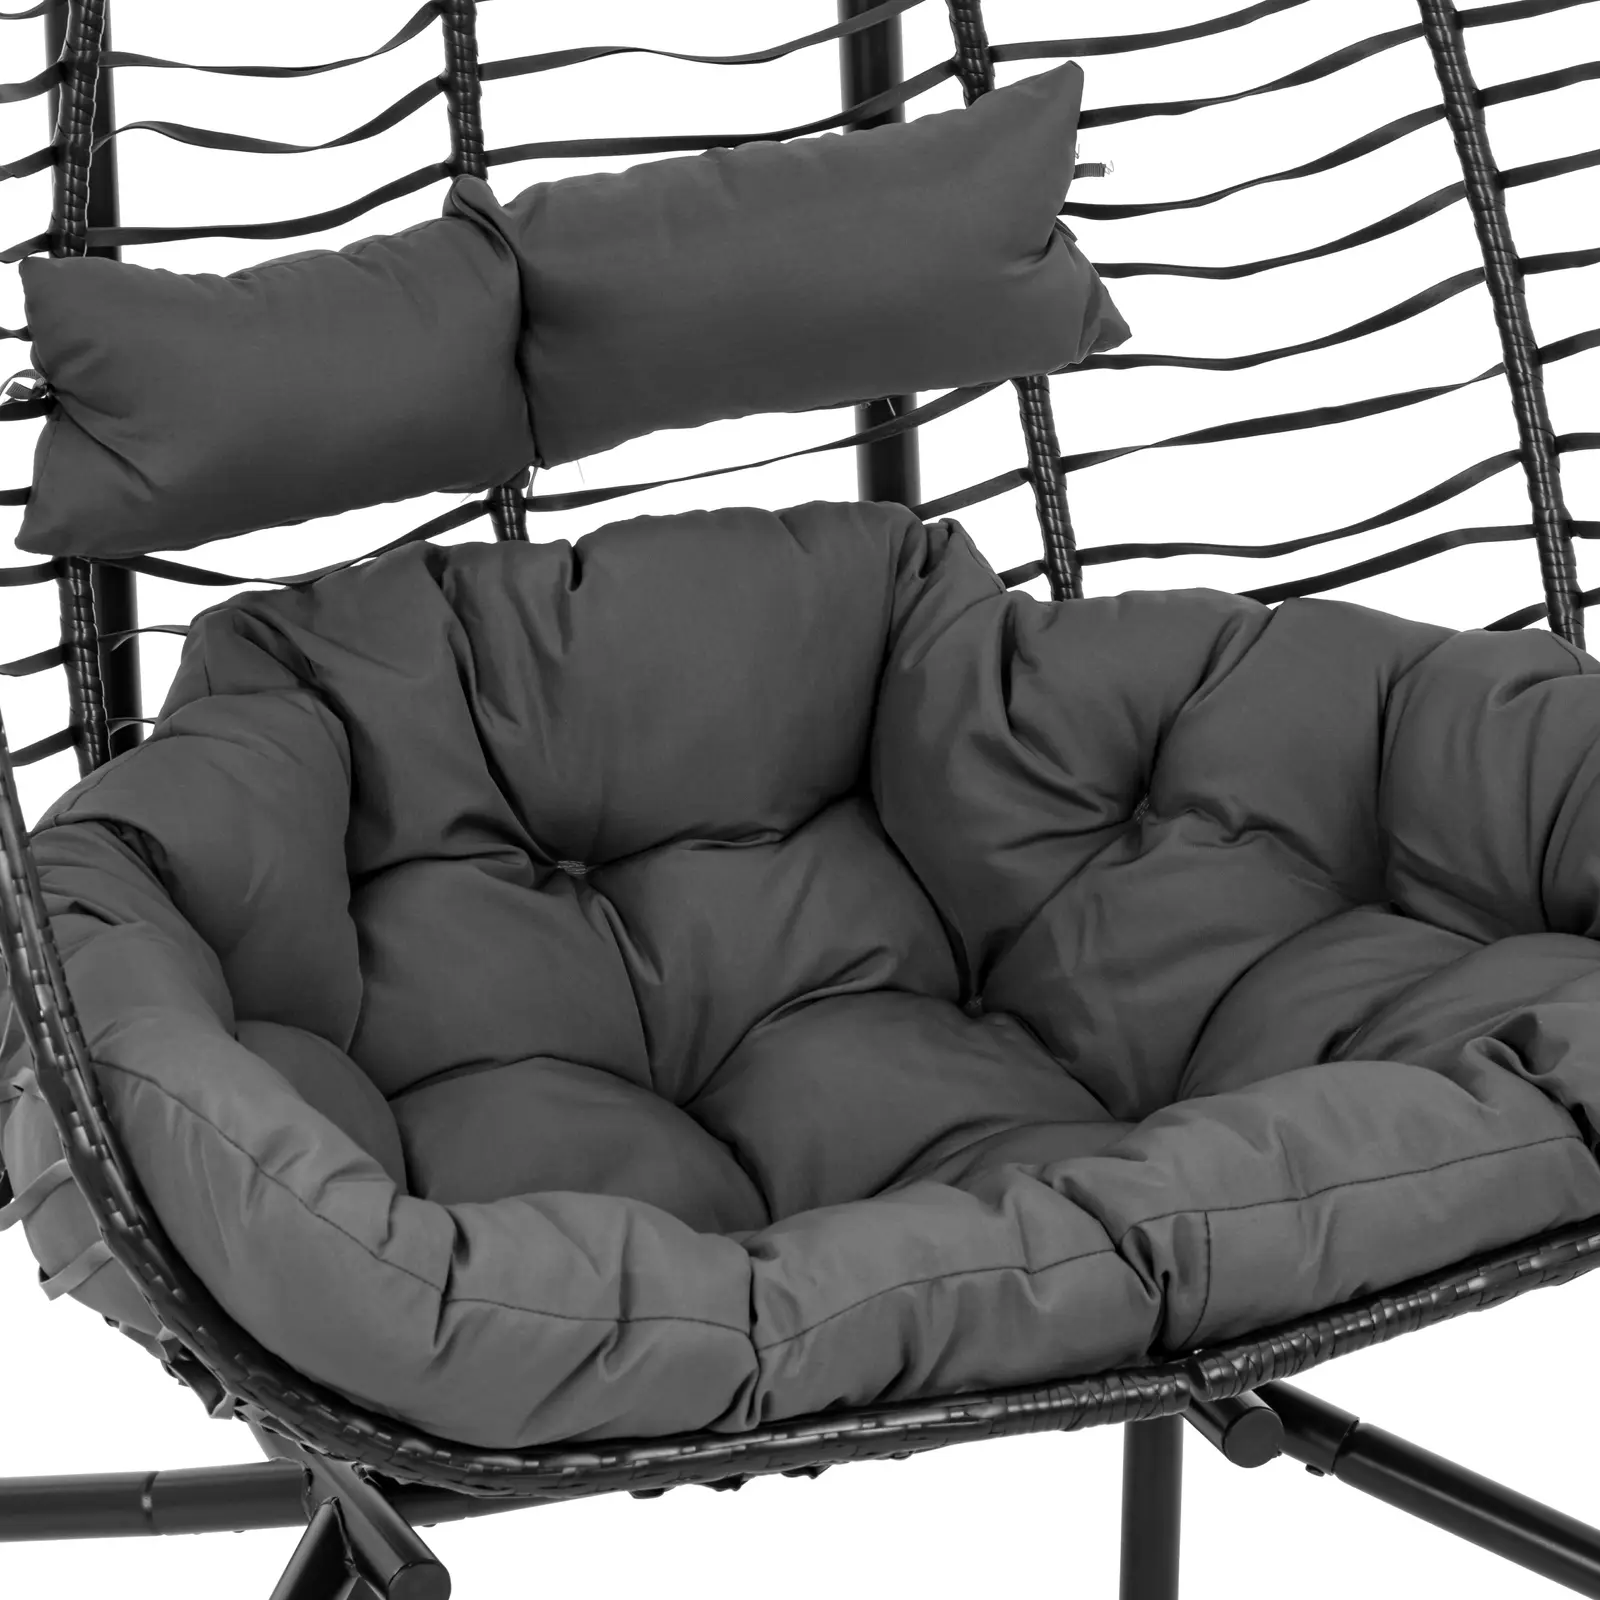 Κρεμαστή καρέκλα εξωτερικού χώρου με βάση - για δύο άτομα - αναδιπλούμενο κάθισμα - μαύρο/γκρι